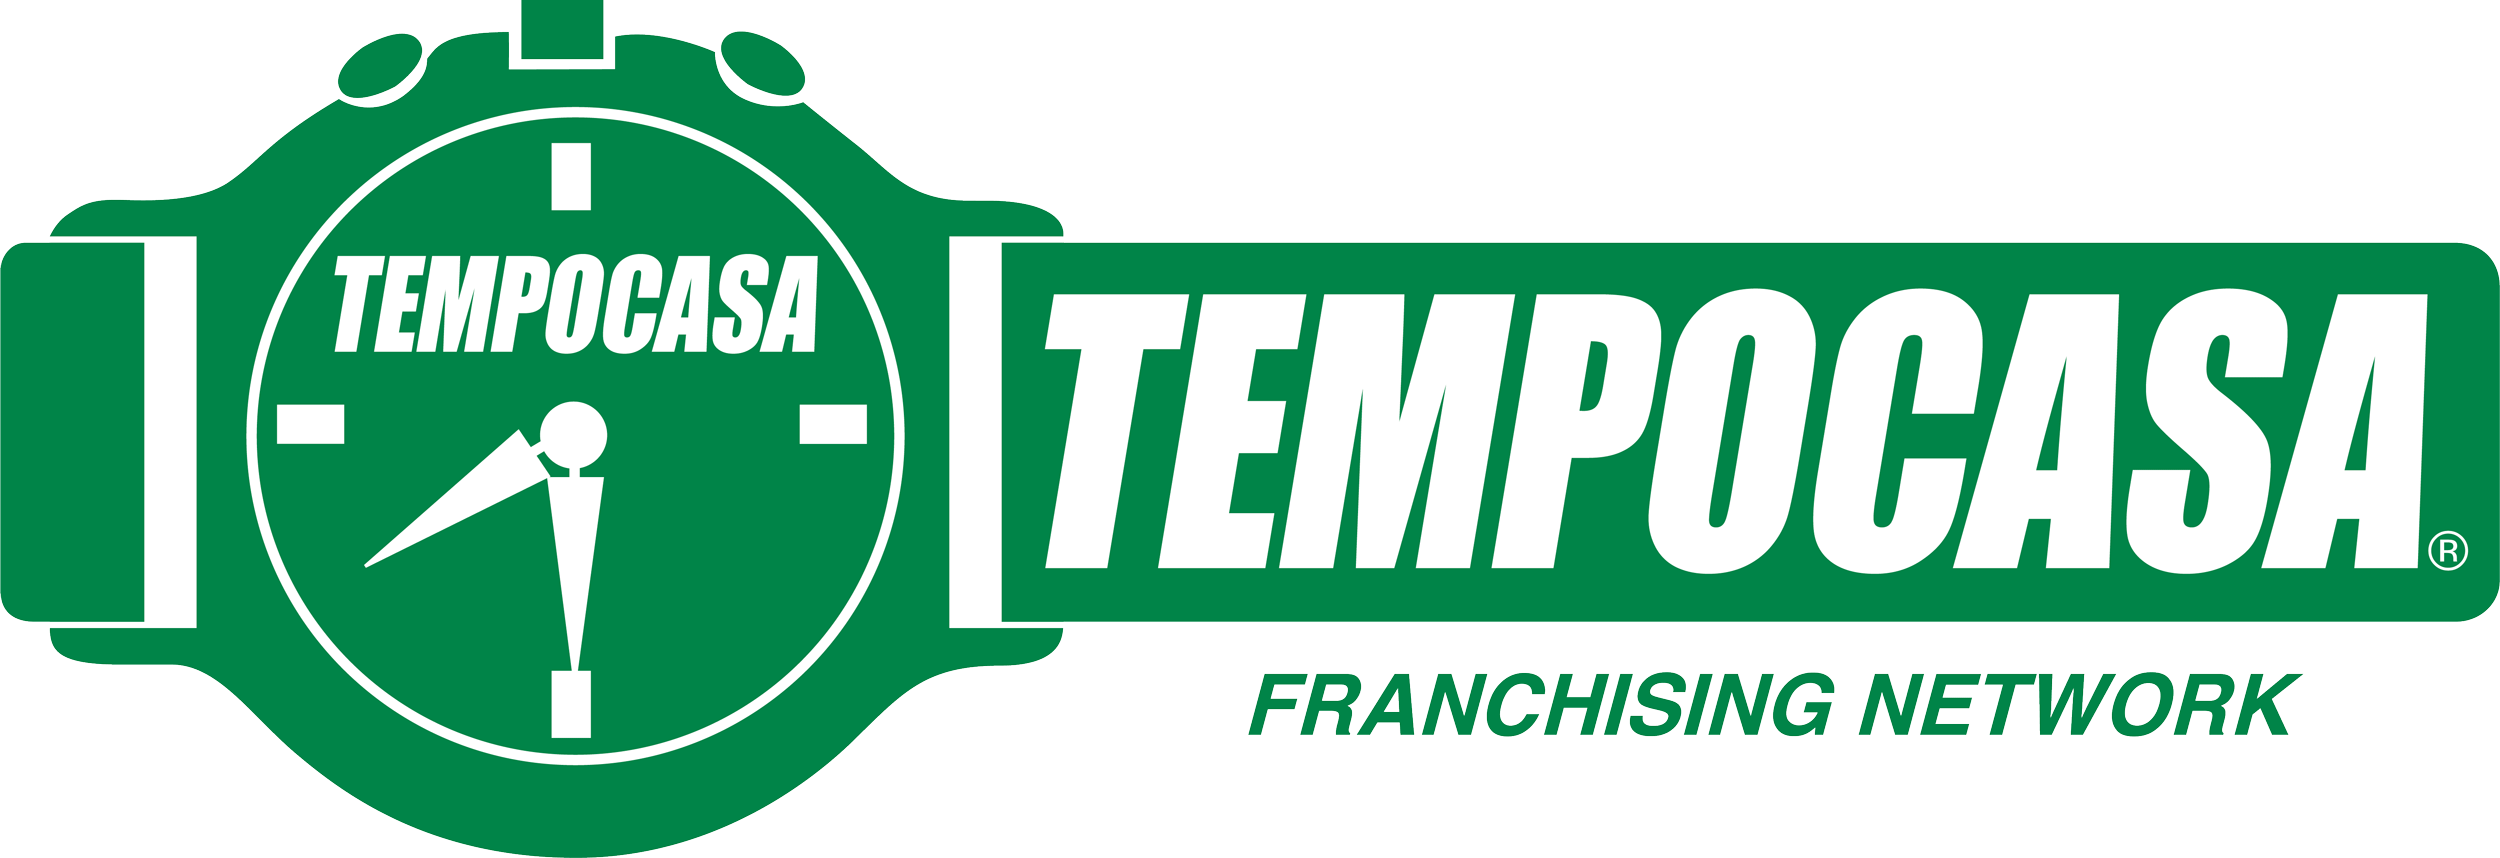 Tempoaffitti - Paderno Dugnano/Centro - Tempocasa